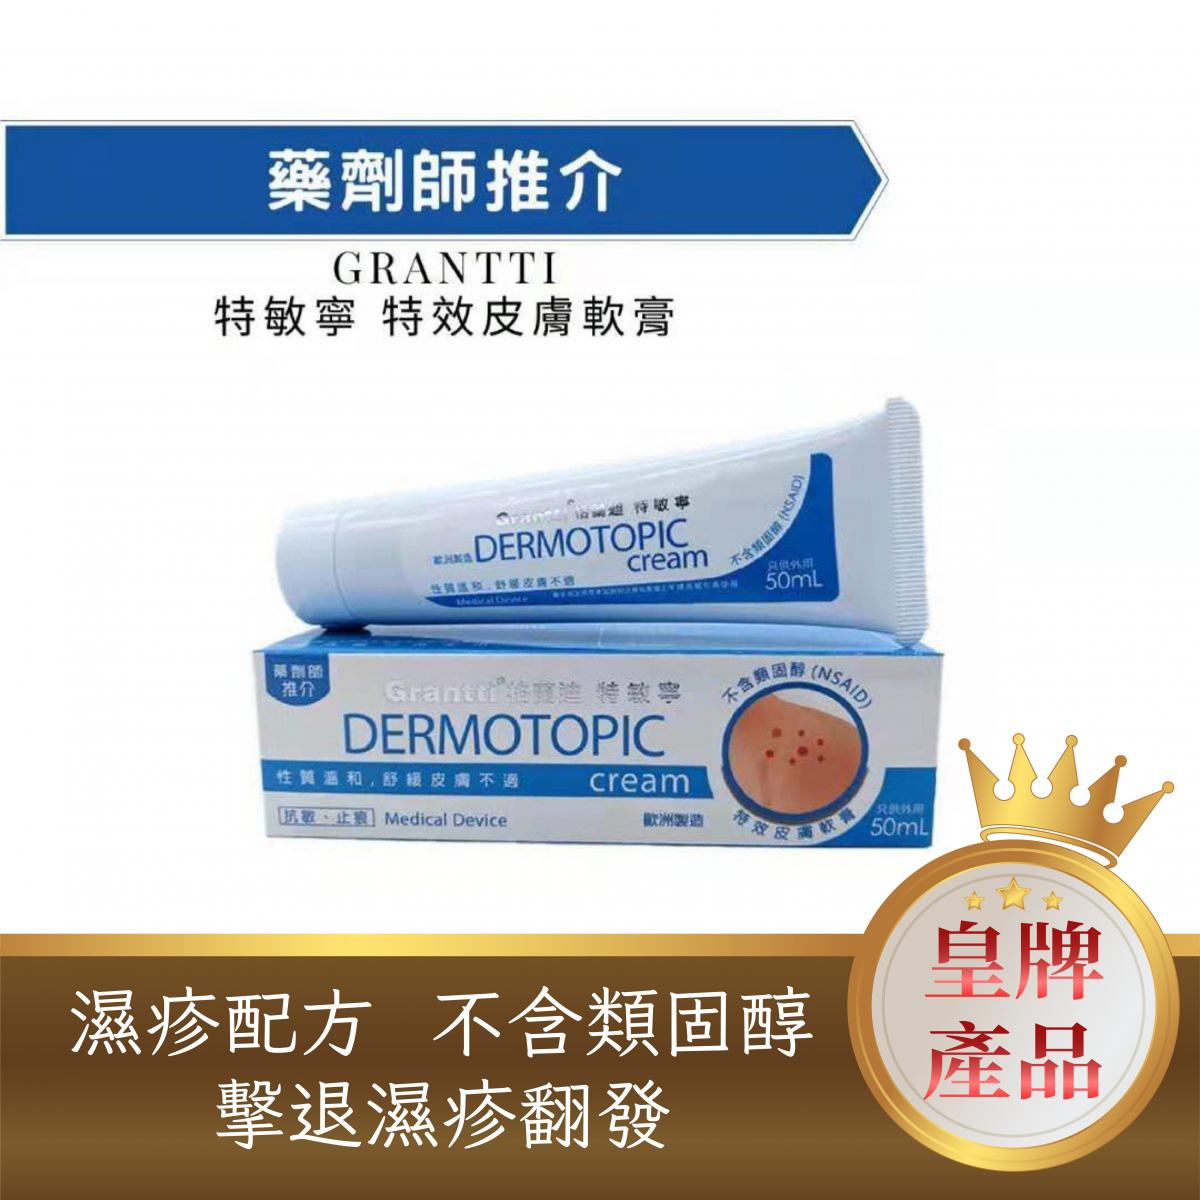 DERMOTOPIC cream (NSAID)